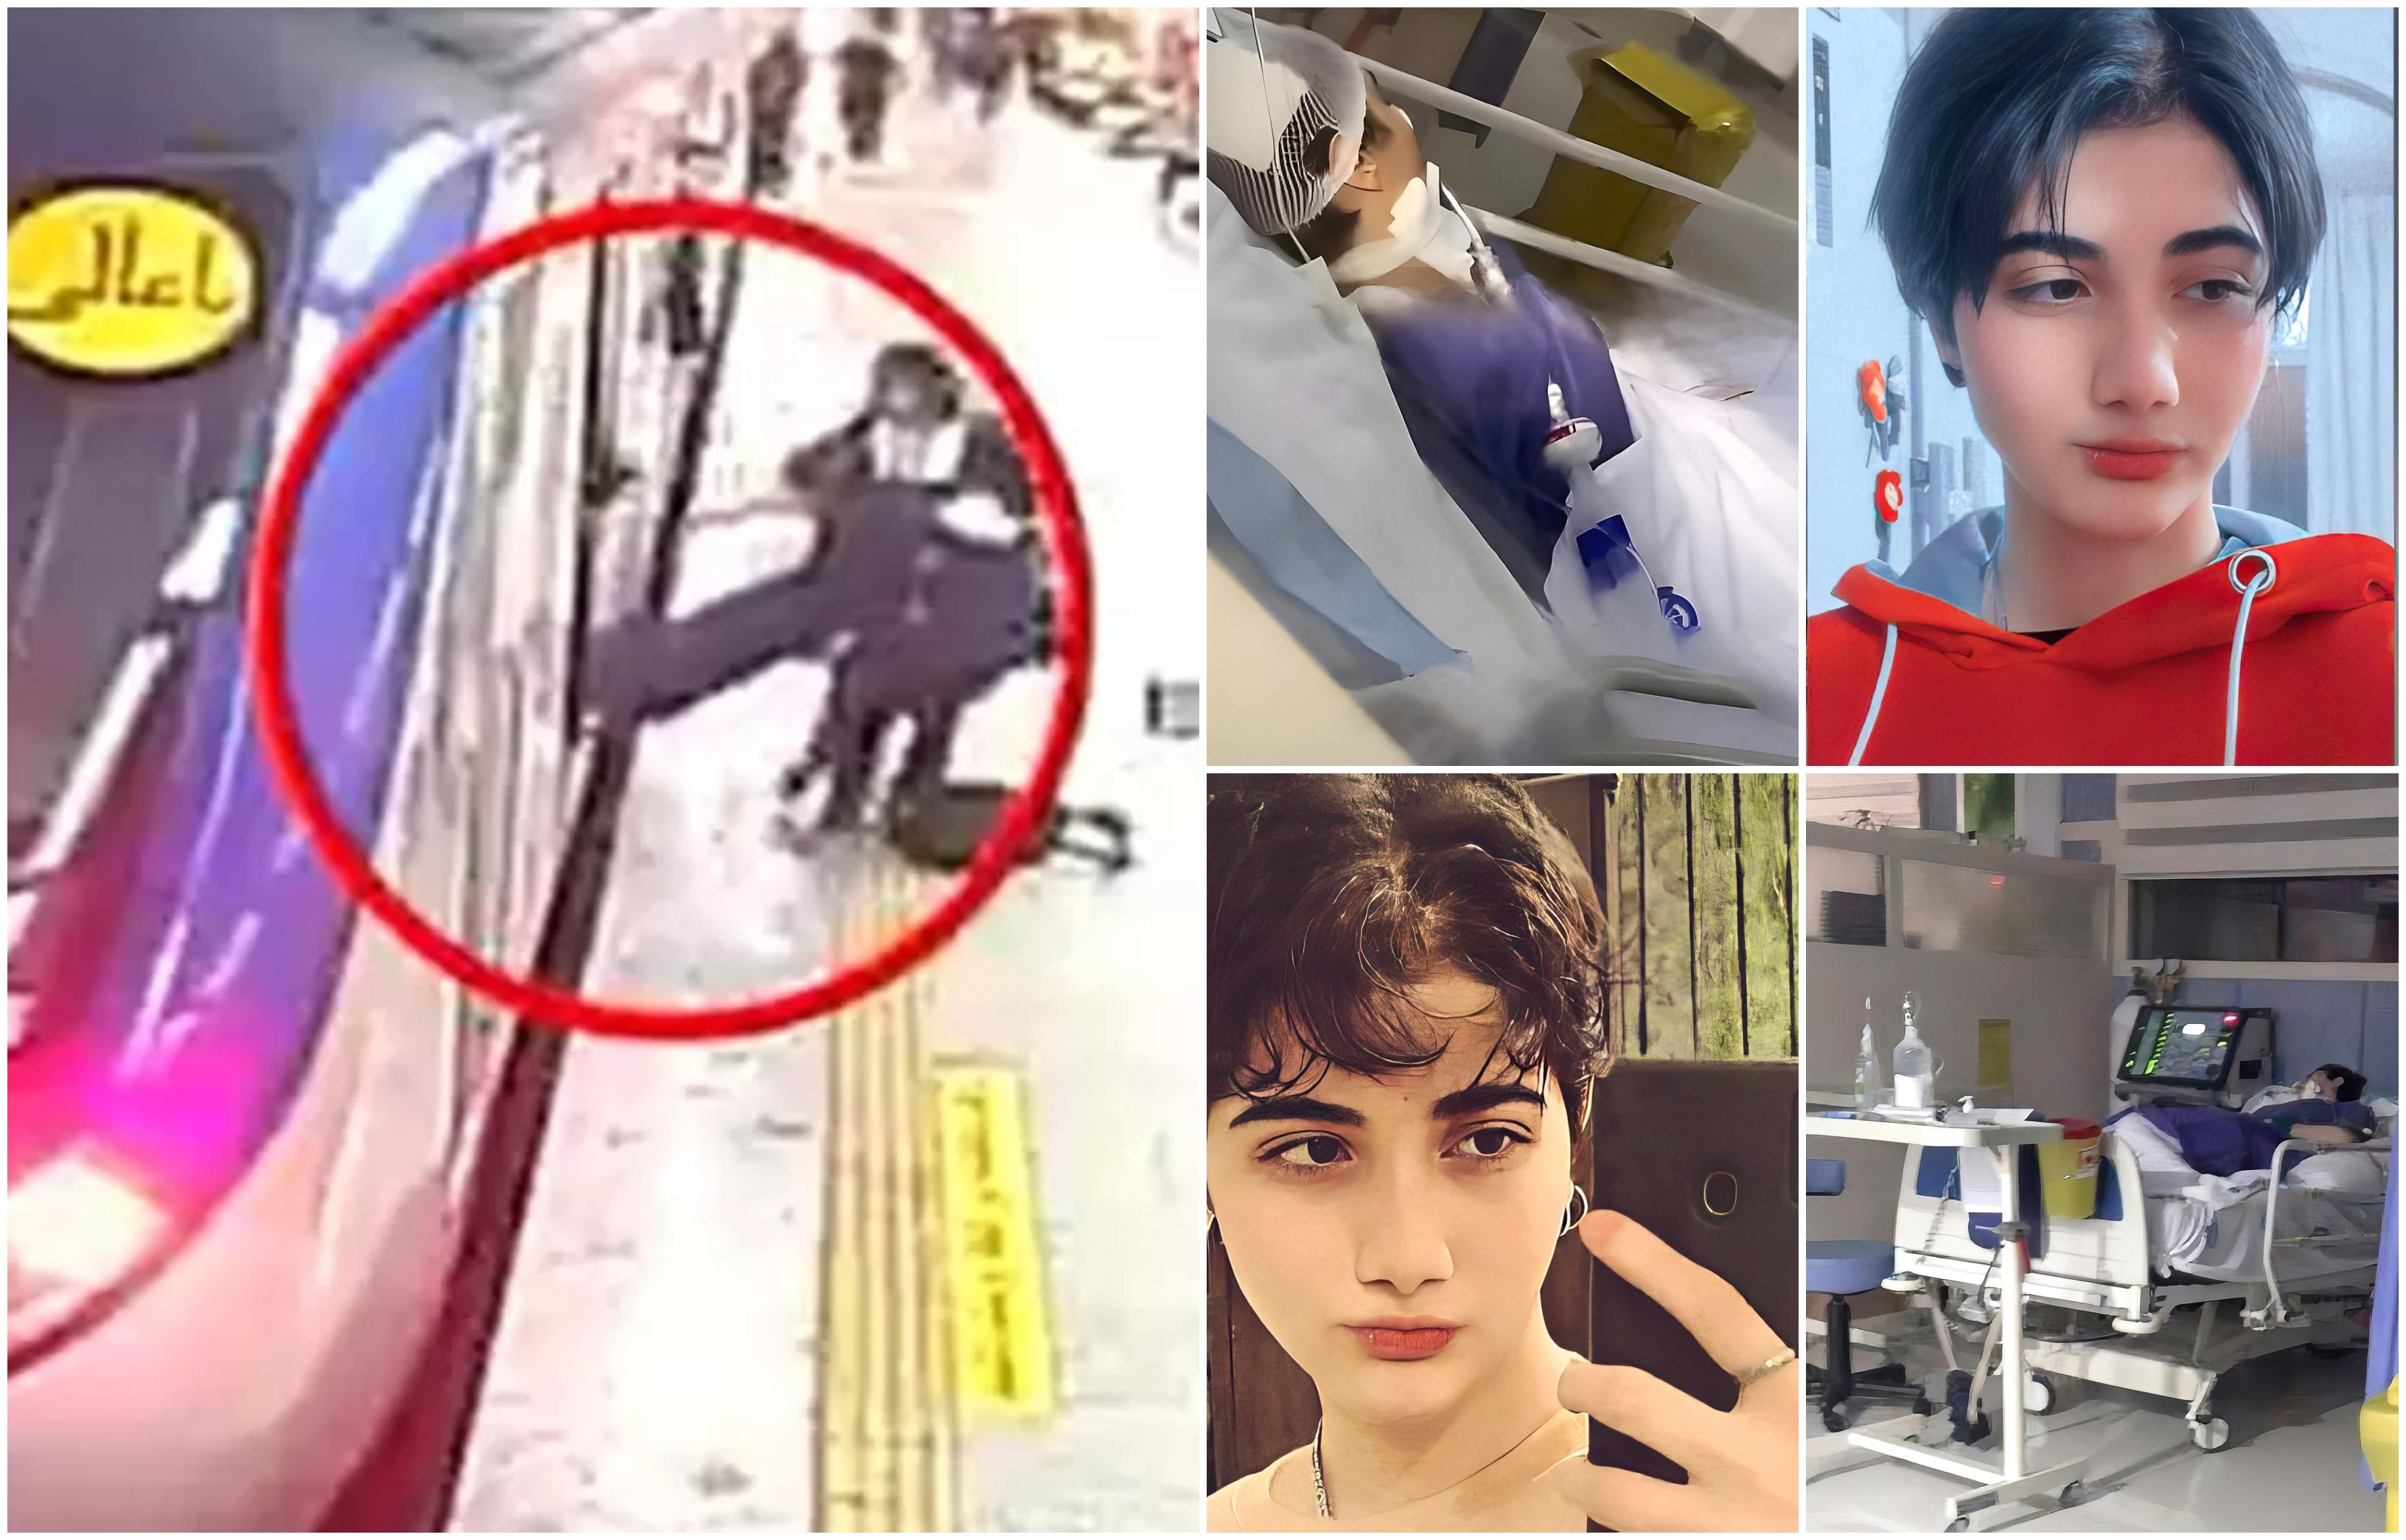 Momentul în care o tânără iraniană este scoasă inconștientă din metrou, după ce a fost bătută de polițiști pentru că nu purta hijab. Ar fi în moarte cerebrală